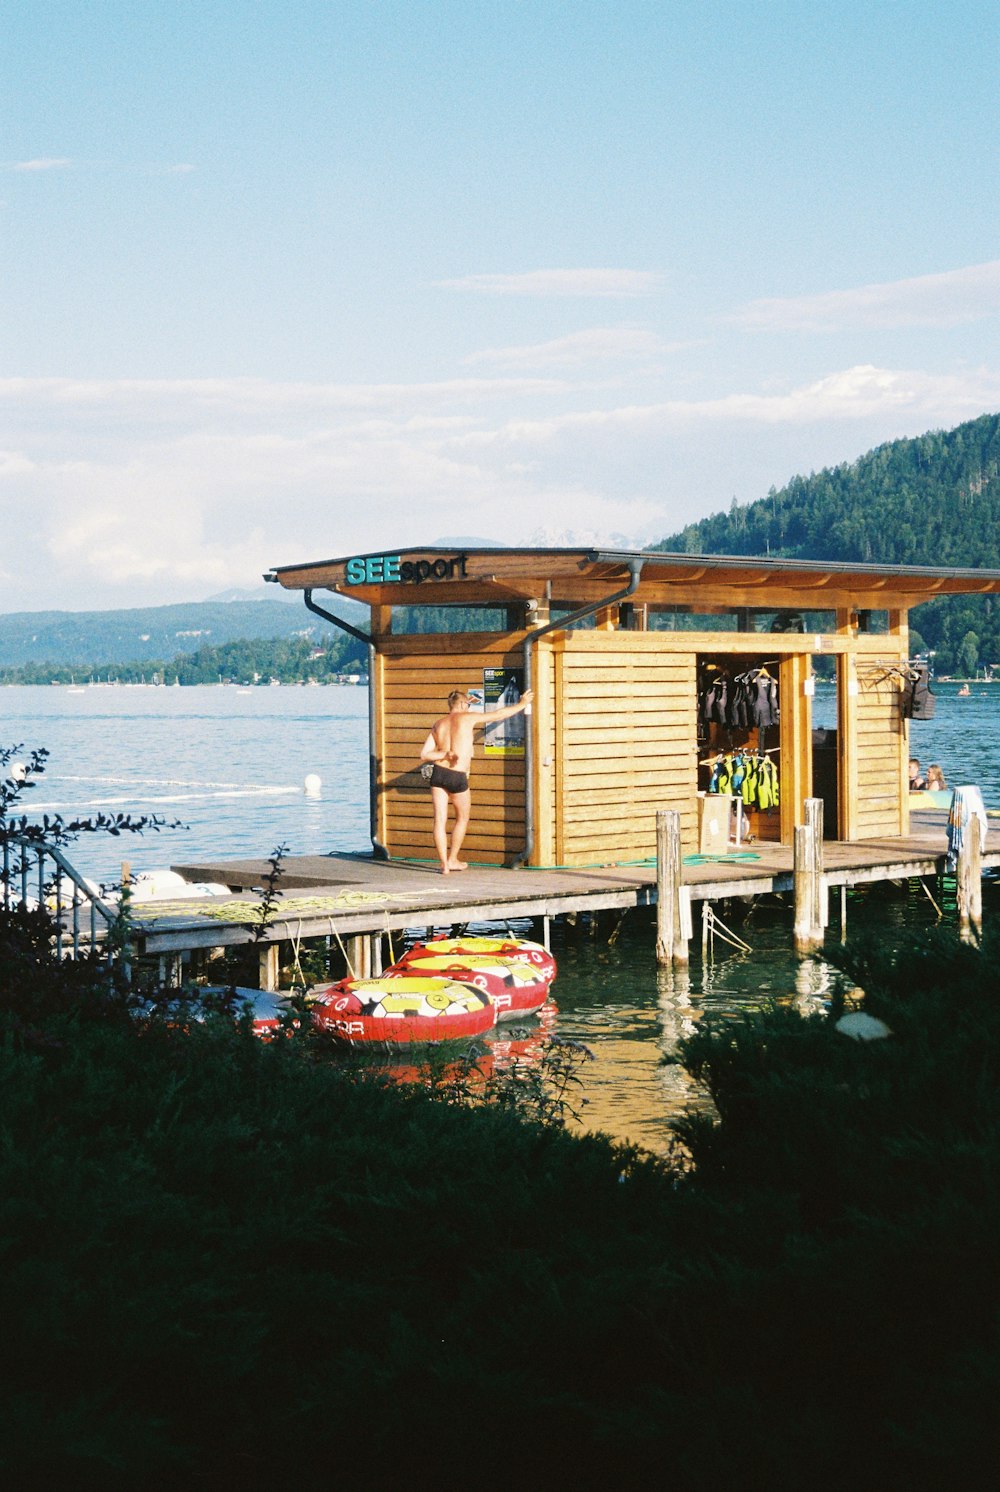 Ein kleines Bootshaus auf einem See mit einer Person darin